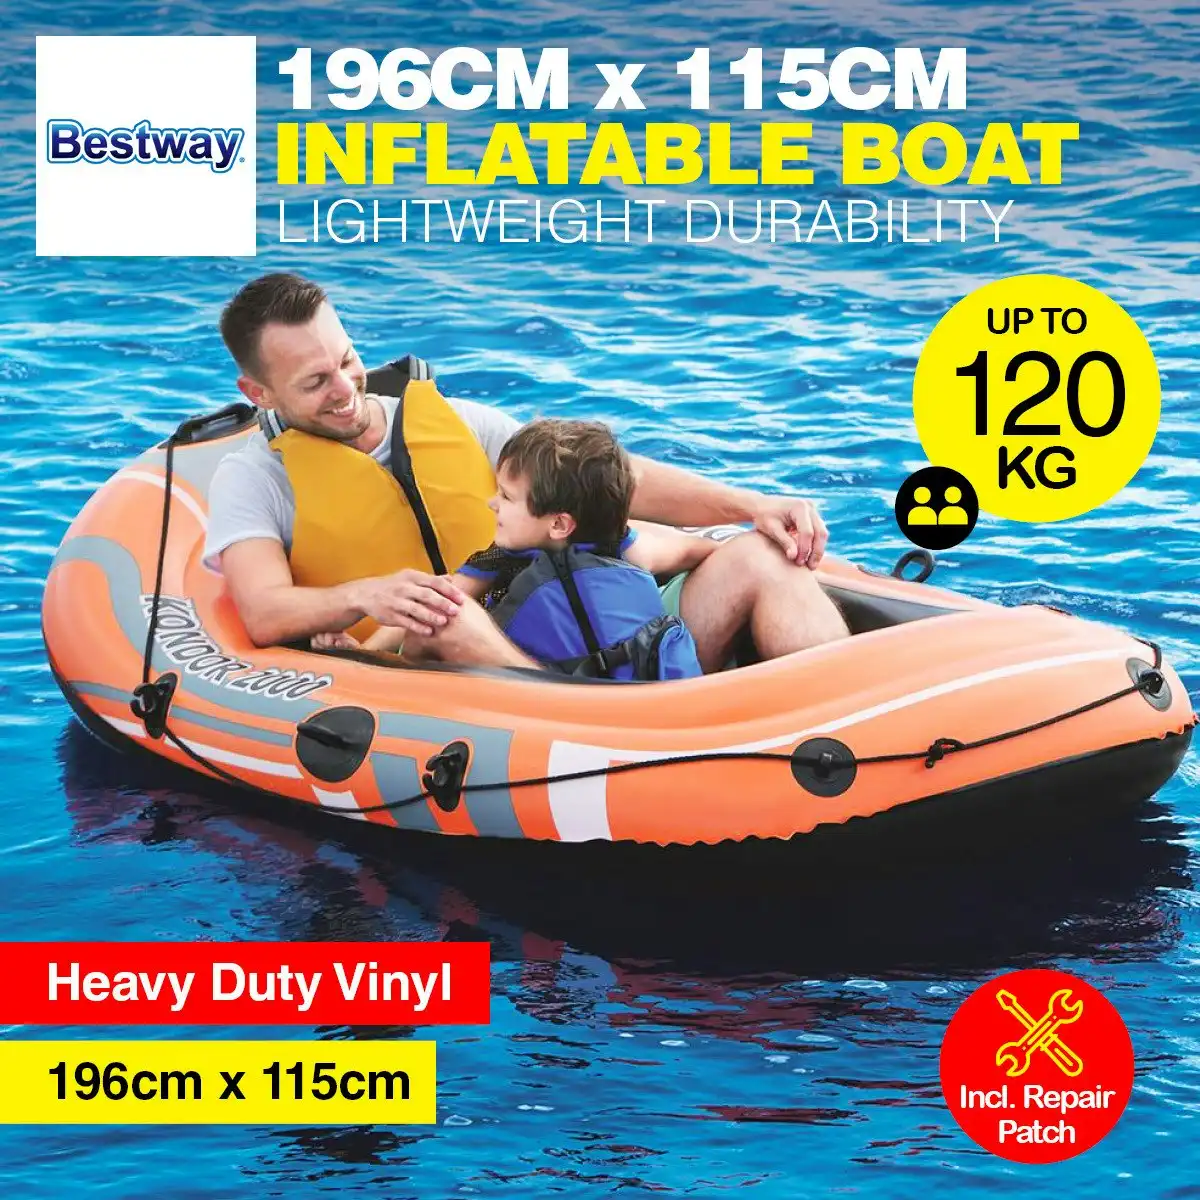 Bestway Inflatable Boat UV Resistant Leak Proof Beach Pool Fun 196cm x 115cm